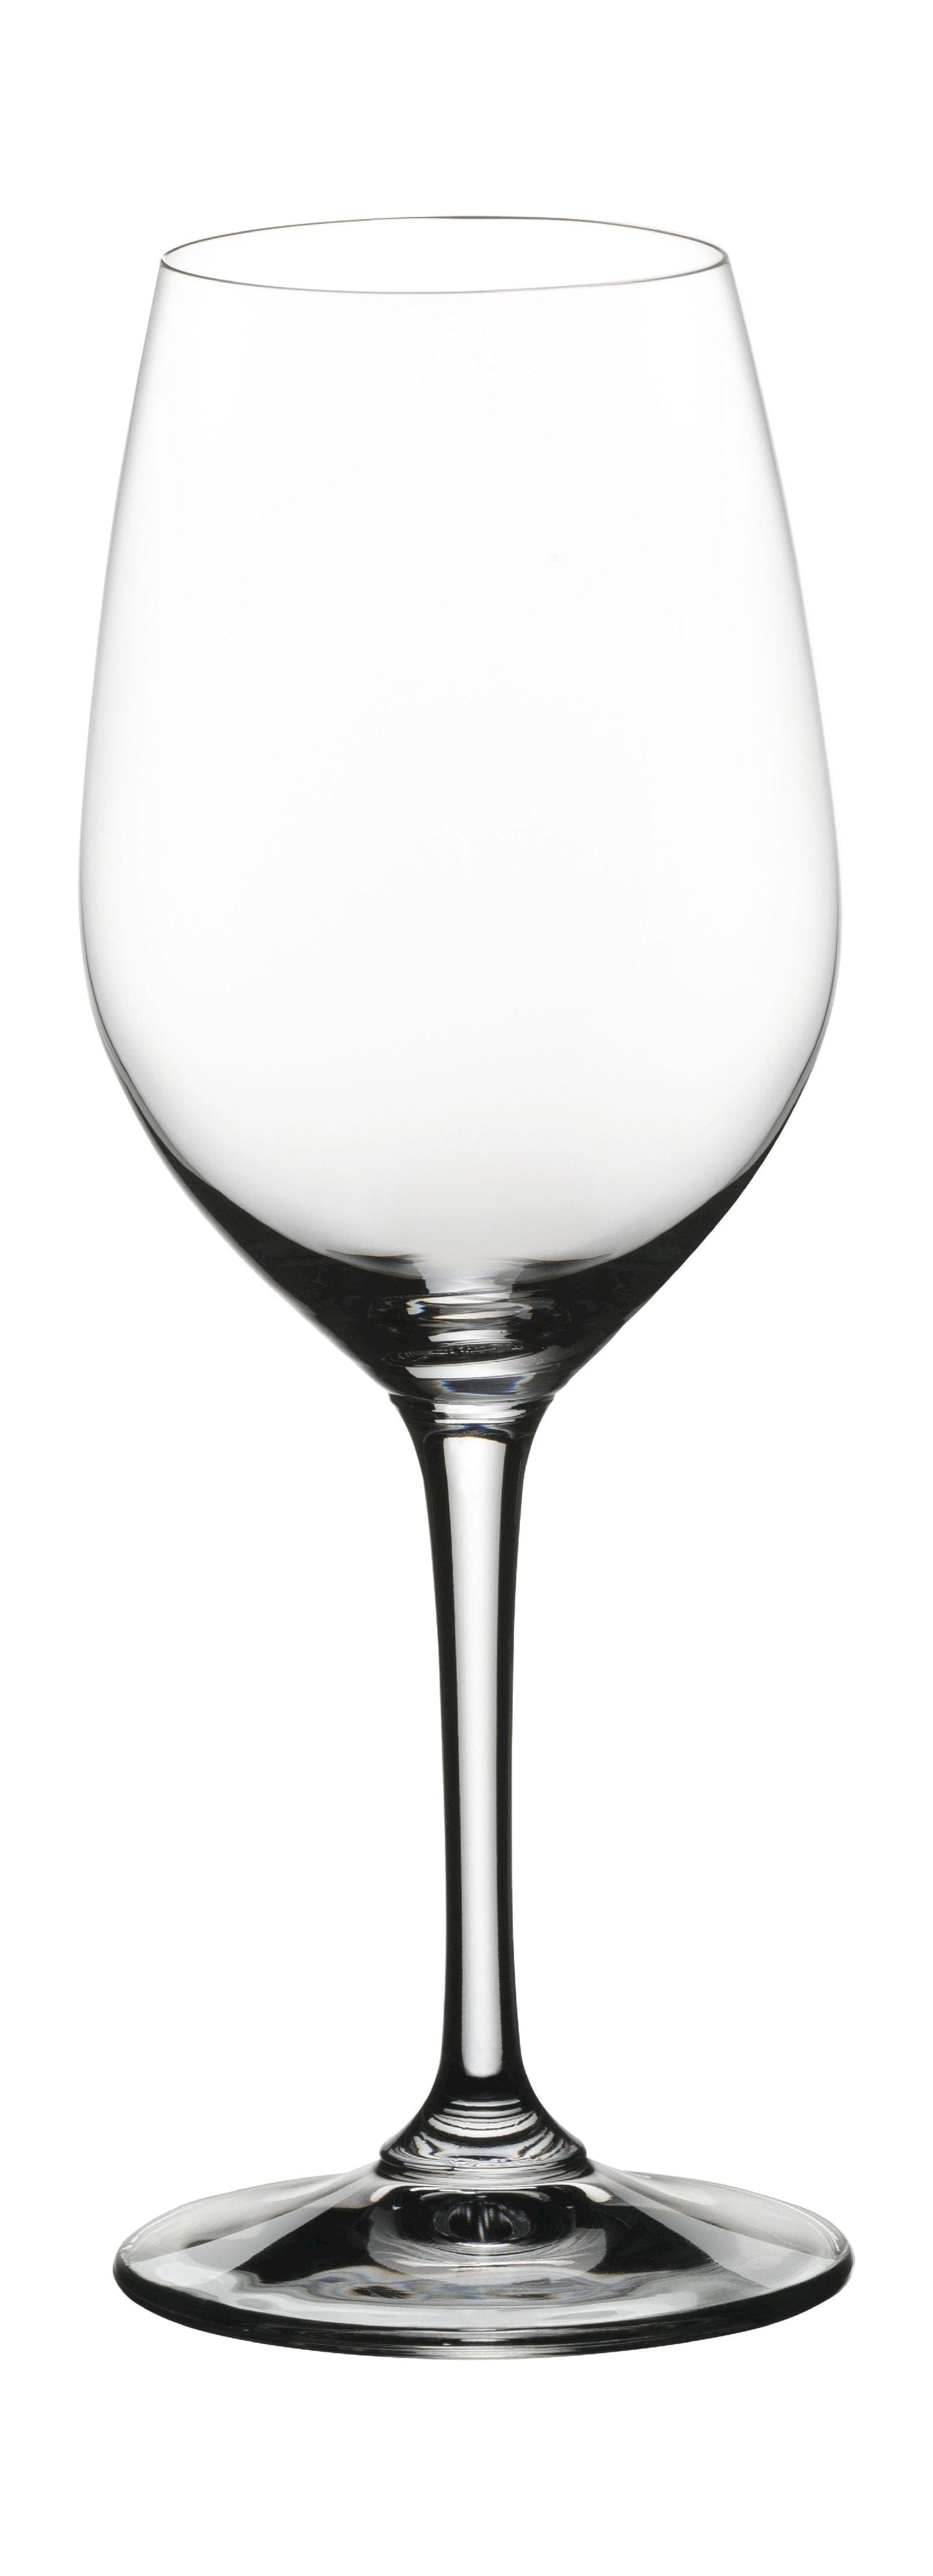 Nachtmann Vi vino wit wijnglas 370 ml, set van 4